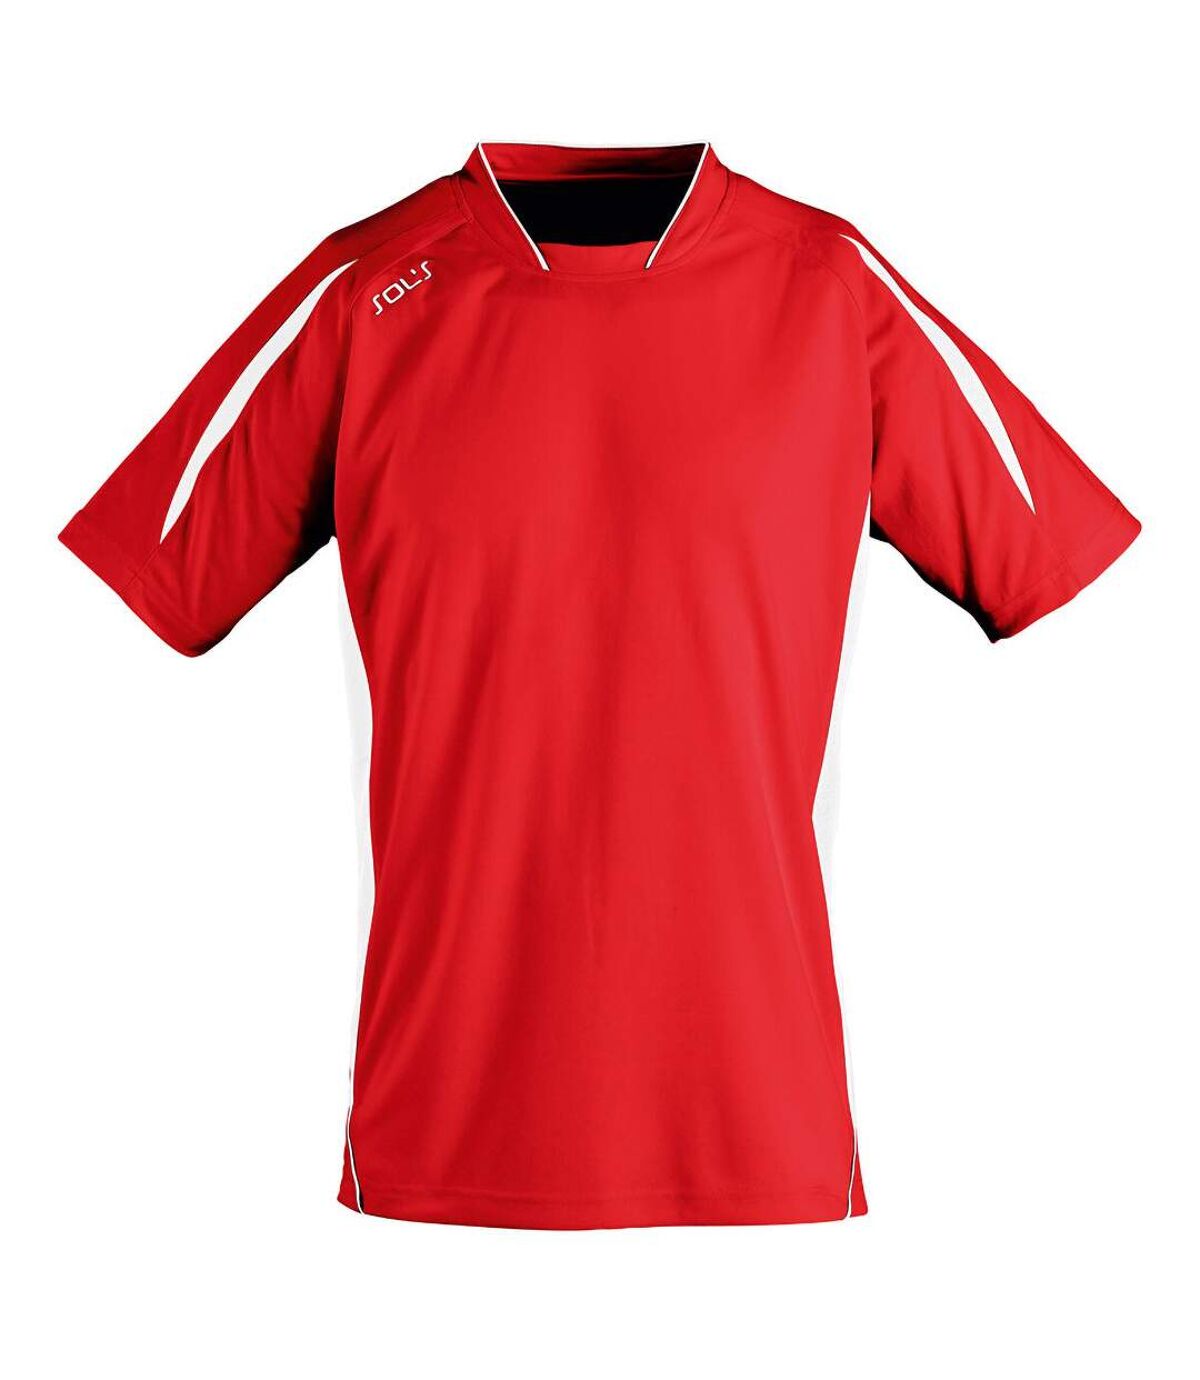 SOLS Mens Maracana 2 Short Sleeve Scoccer T-Shirt (Red/White) - UTPC2810